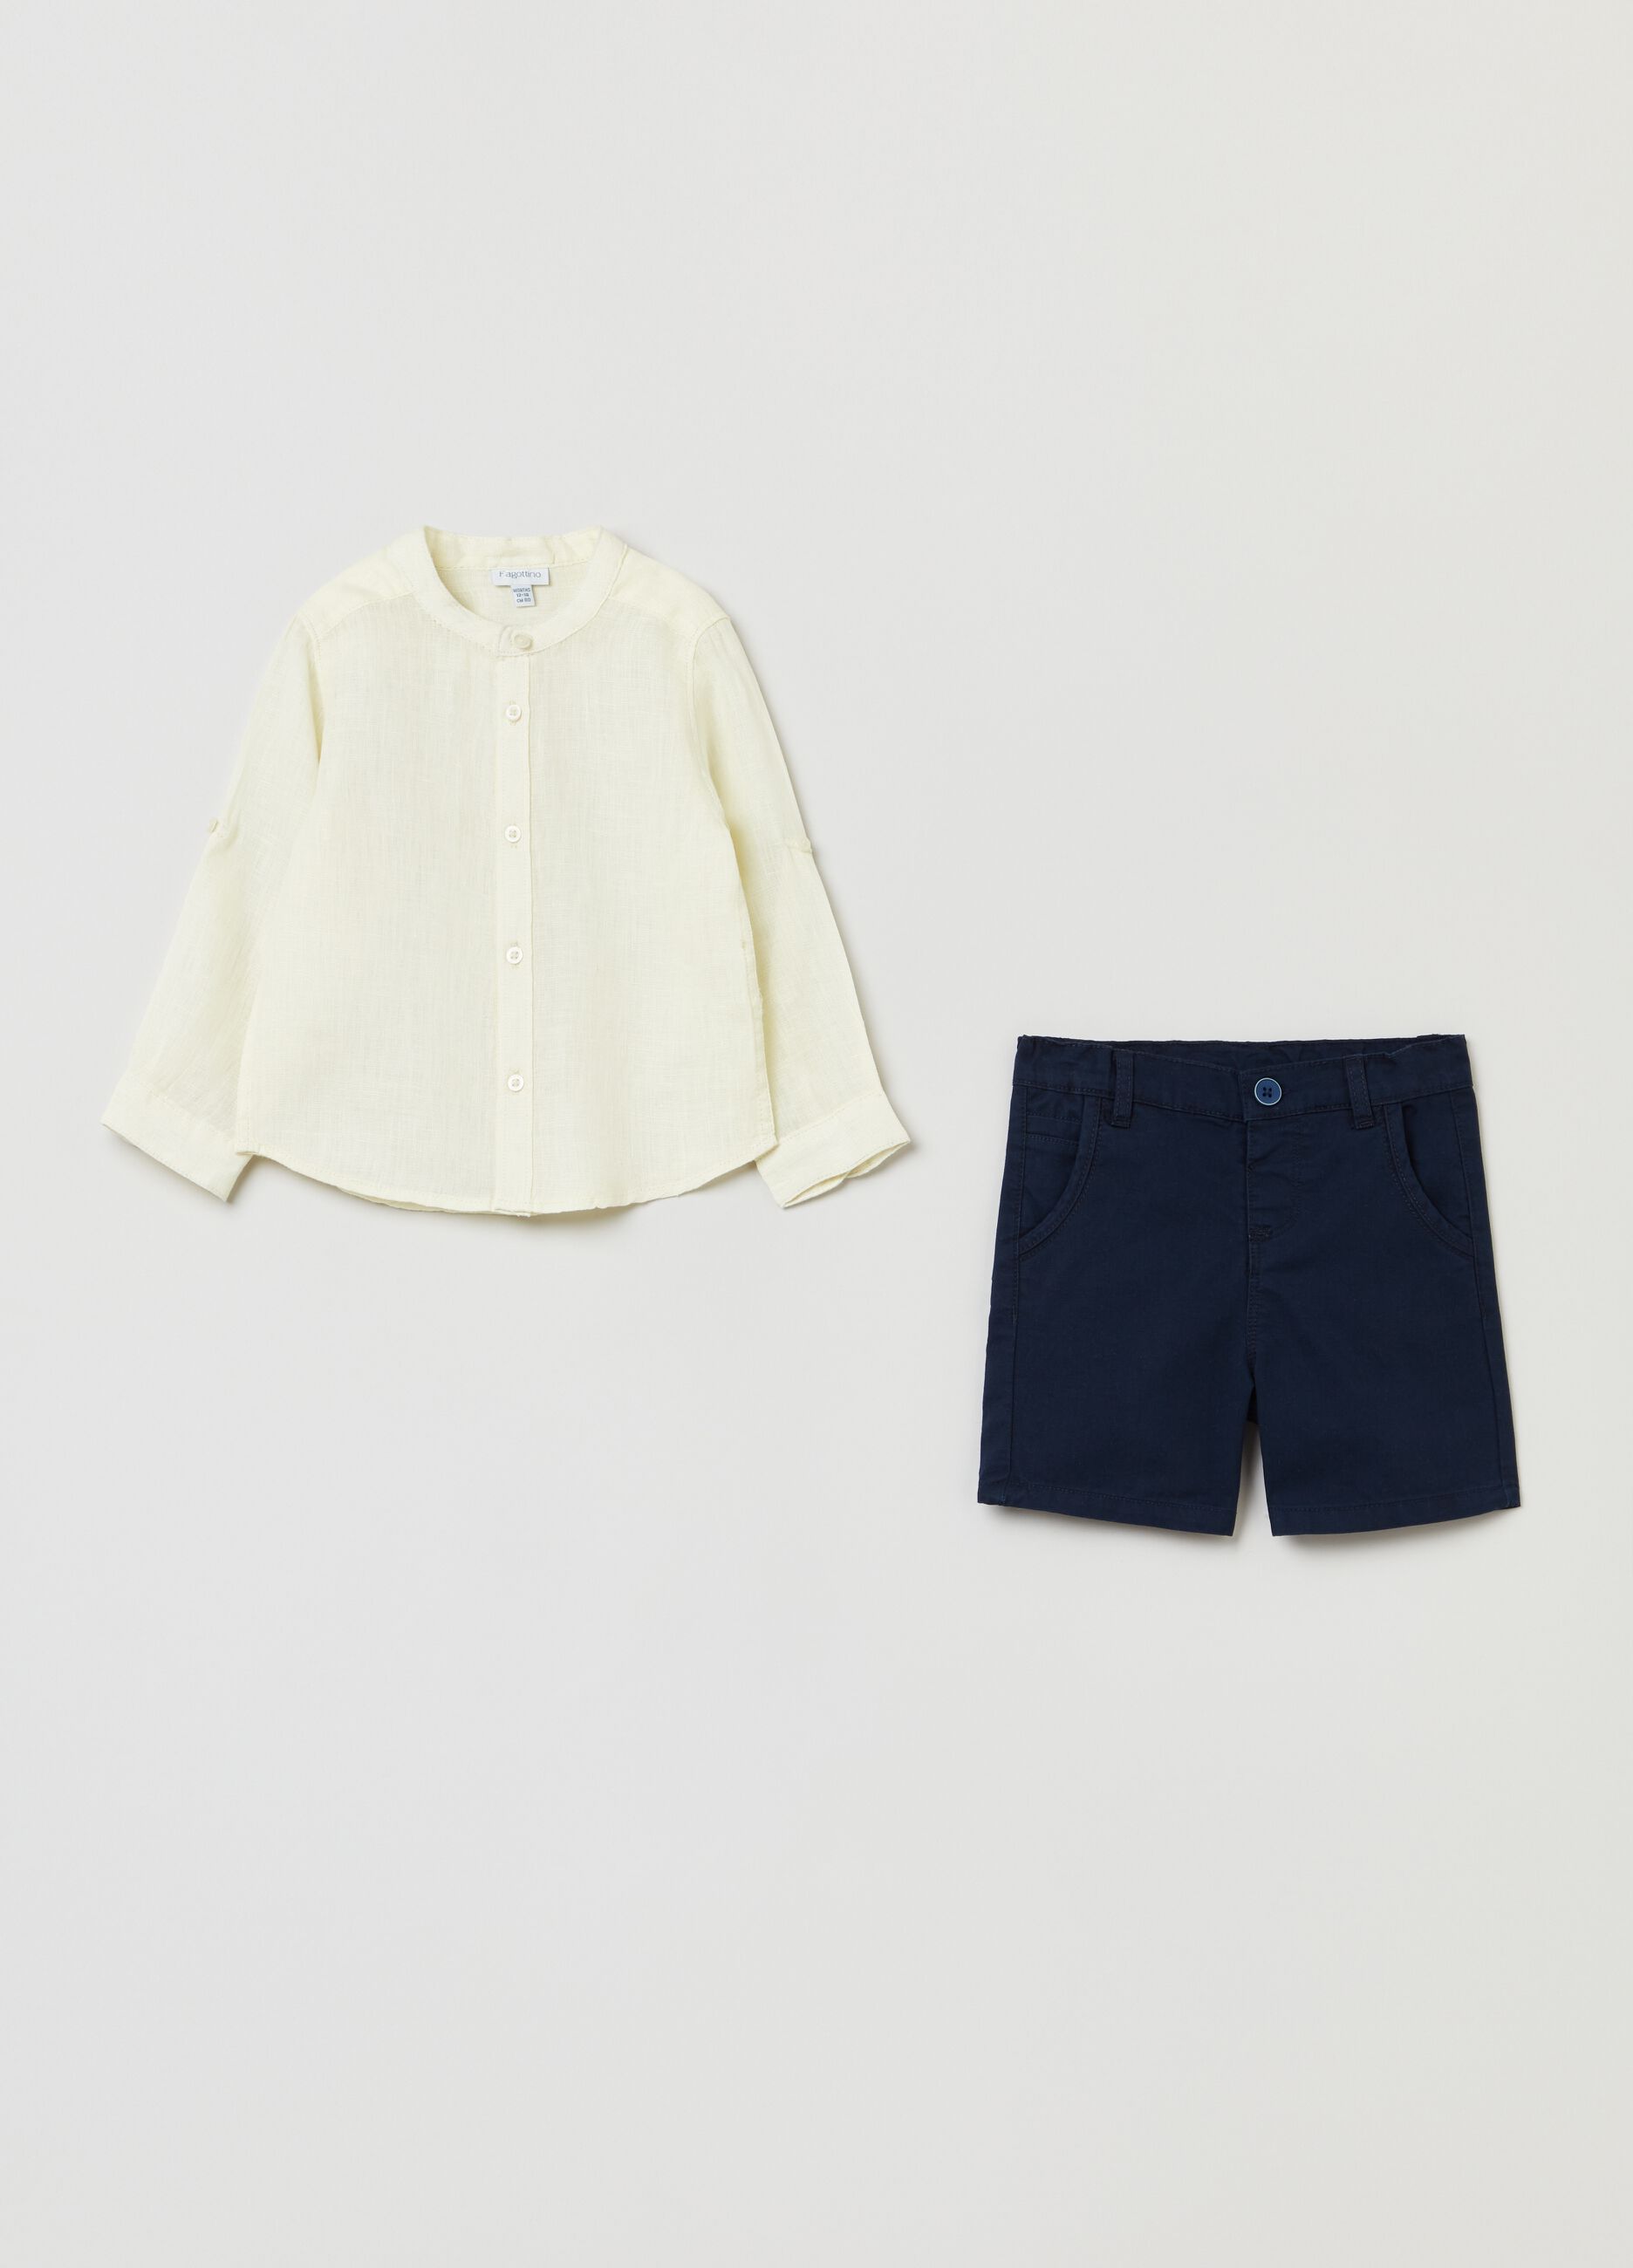 Set consisting of linen shirt and shorts.